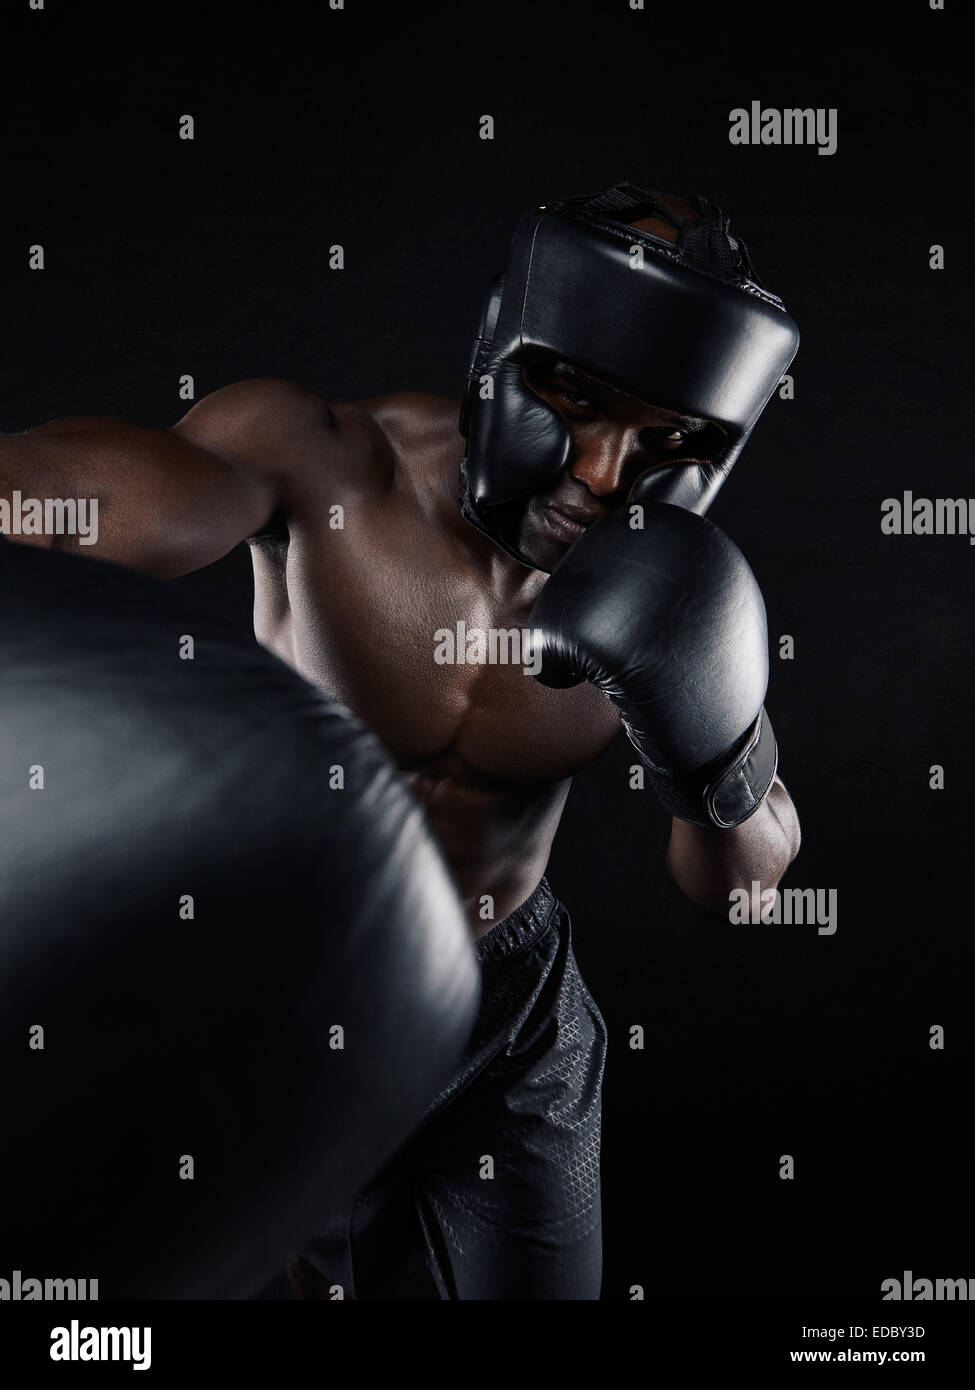 Ritratto di un giovane pugile gettando un punzone in telecamera mentre si pratica su sfondo nero. Atleta maschio indossando guanti di inscatolamento Foto Stock